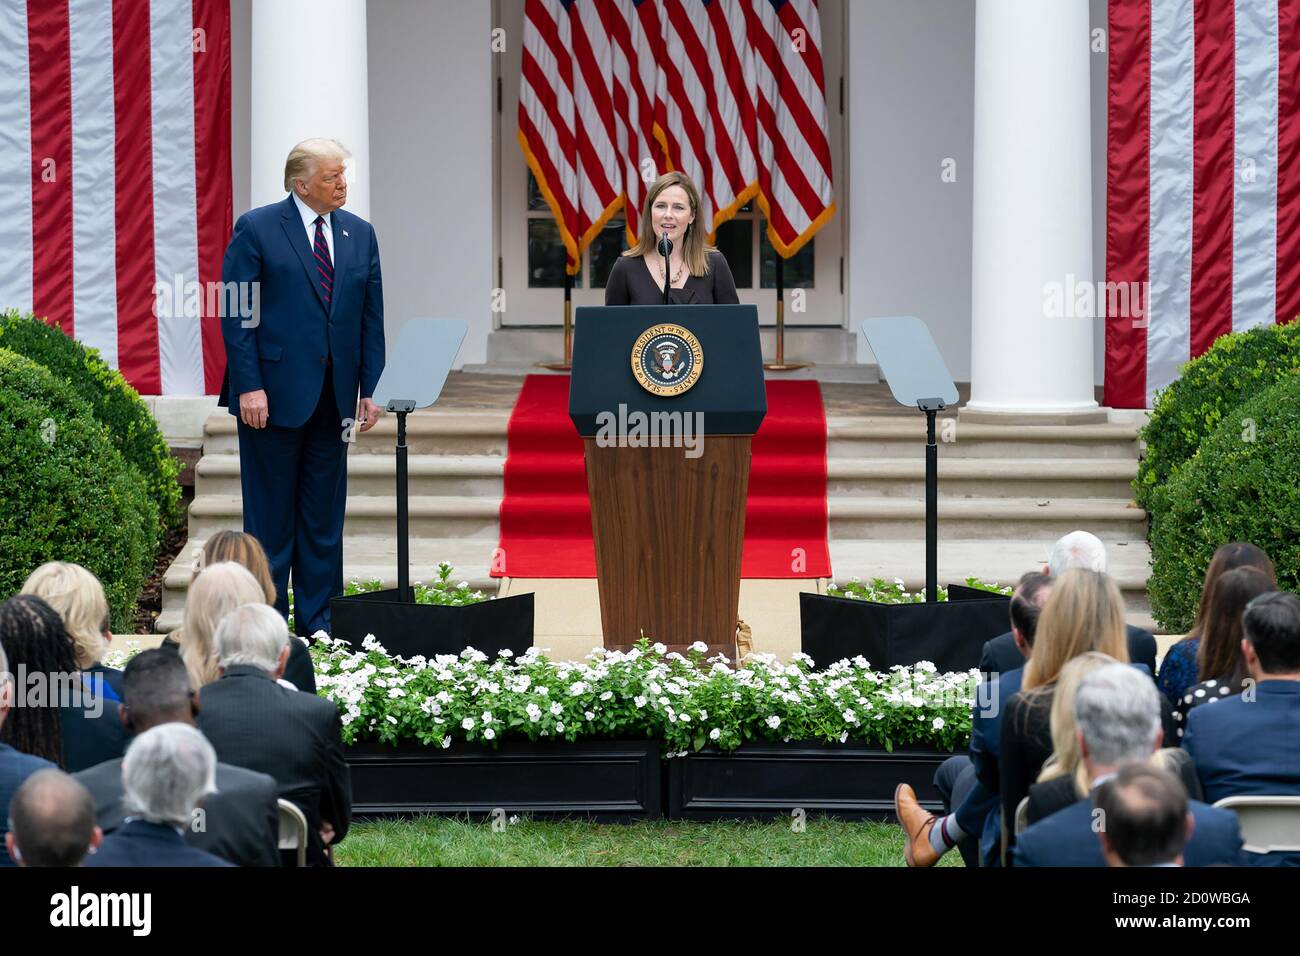 La juge Amy Coney Barrett prononce un discours après que le président Donald J. Trump l'a annoncé comme son candidat à la Cour suprême des États-Unis pour la nomination de son juge associé le samedi 26 septembre 2020, dans le jardin des roses de la Maison Blanche. (ÉTATS-UNIS) Banque D'Images